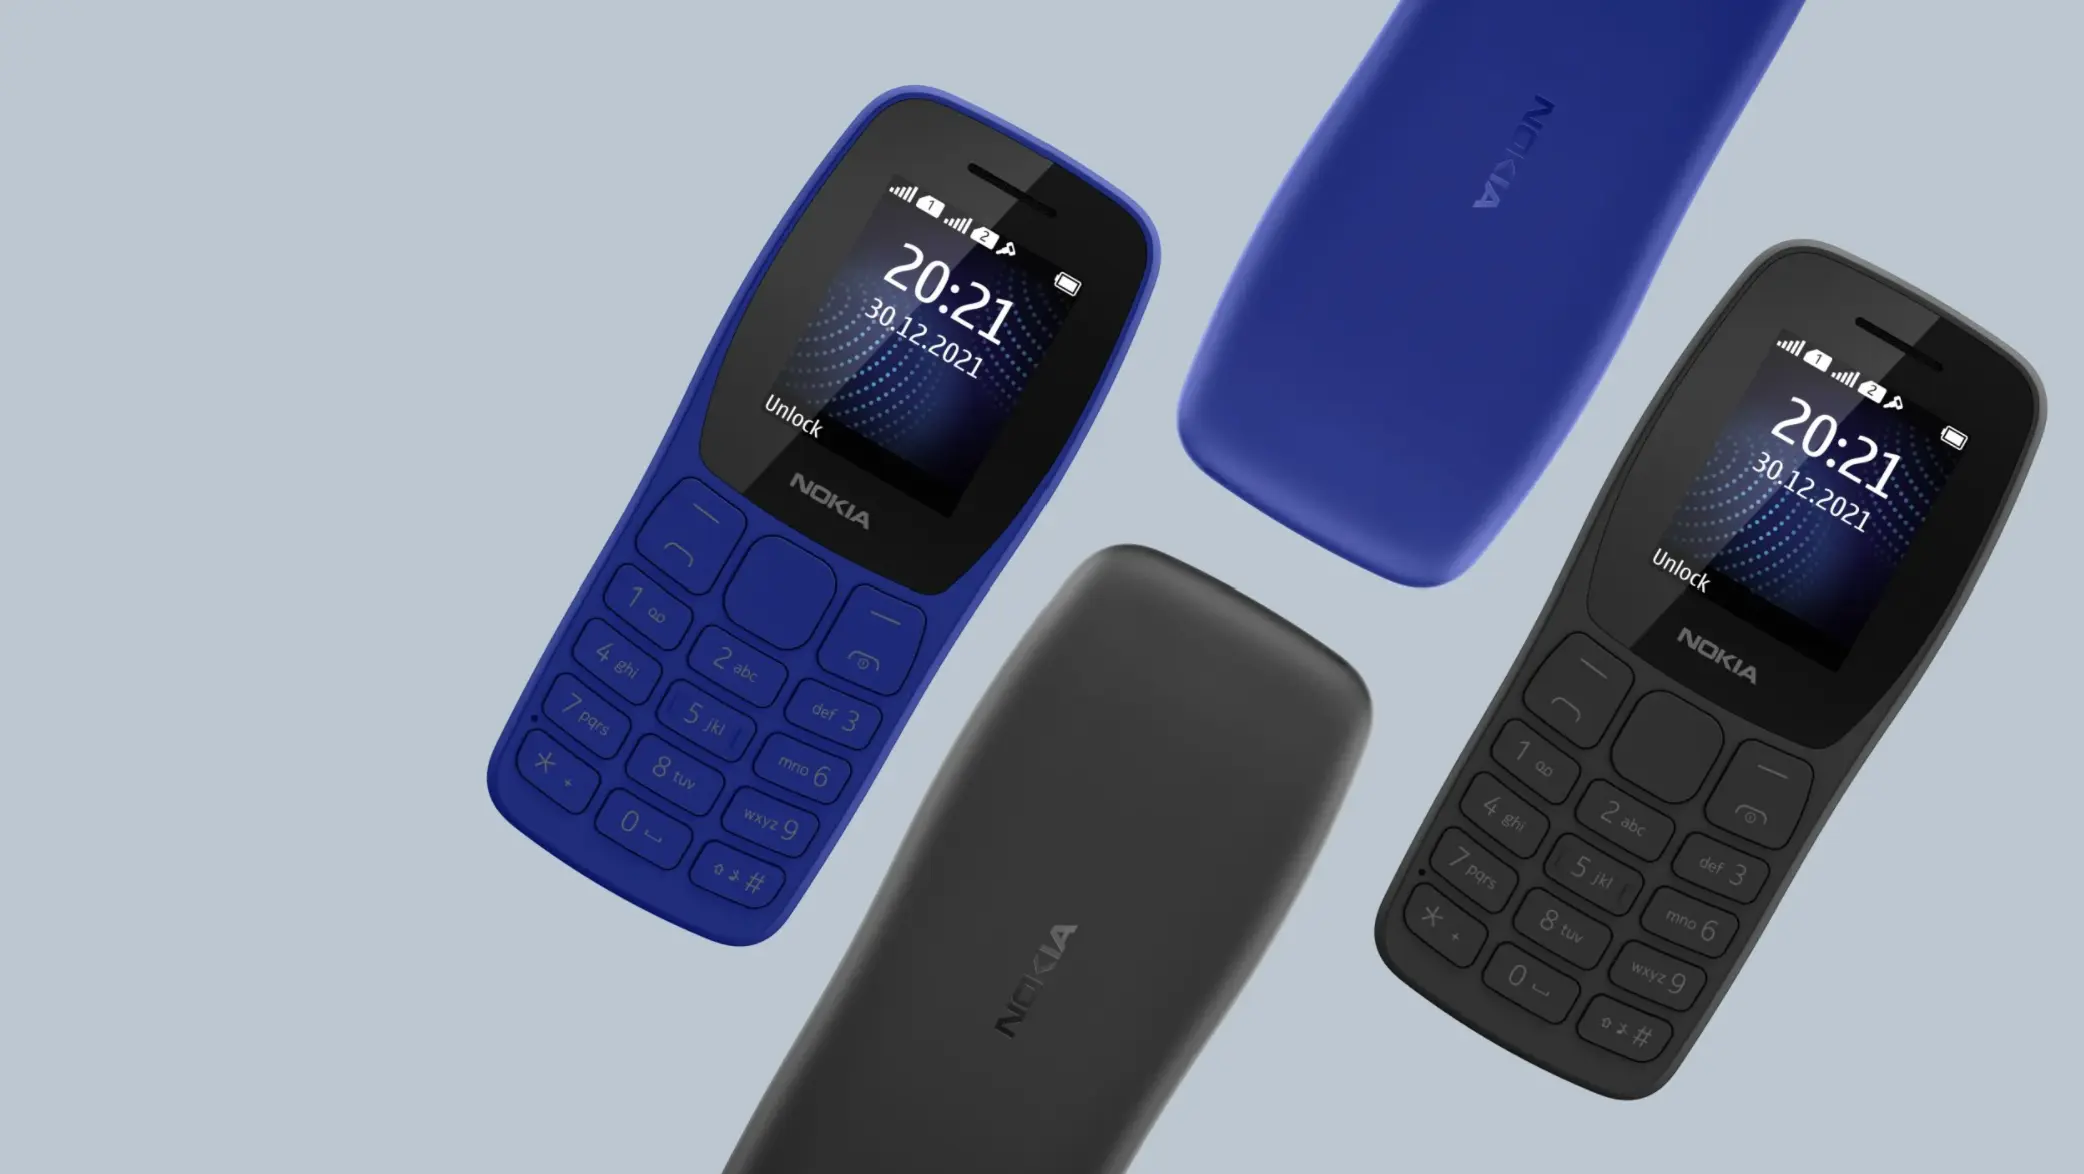 Larga vida a los feature phones, HMD Global lanza el Nokia 105